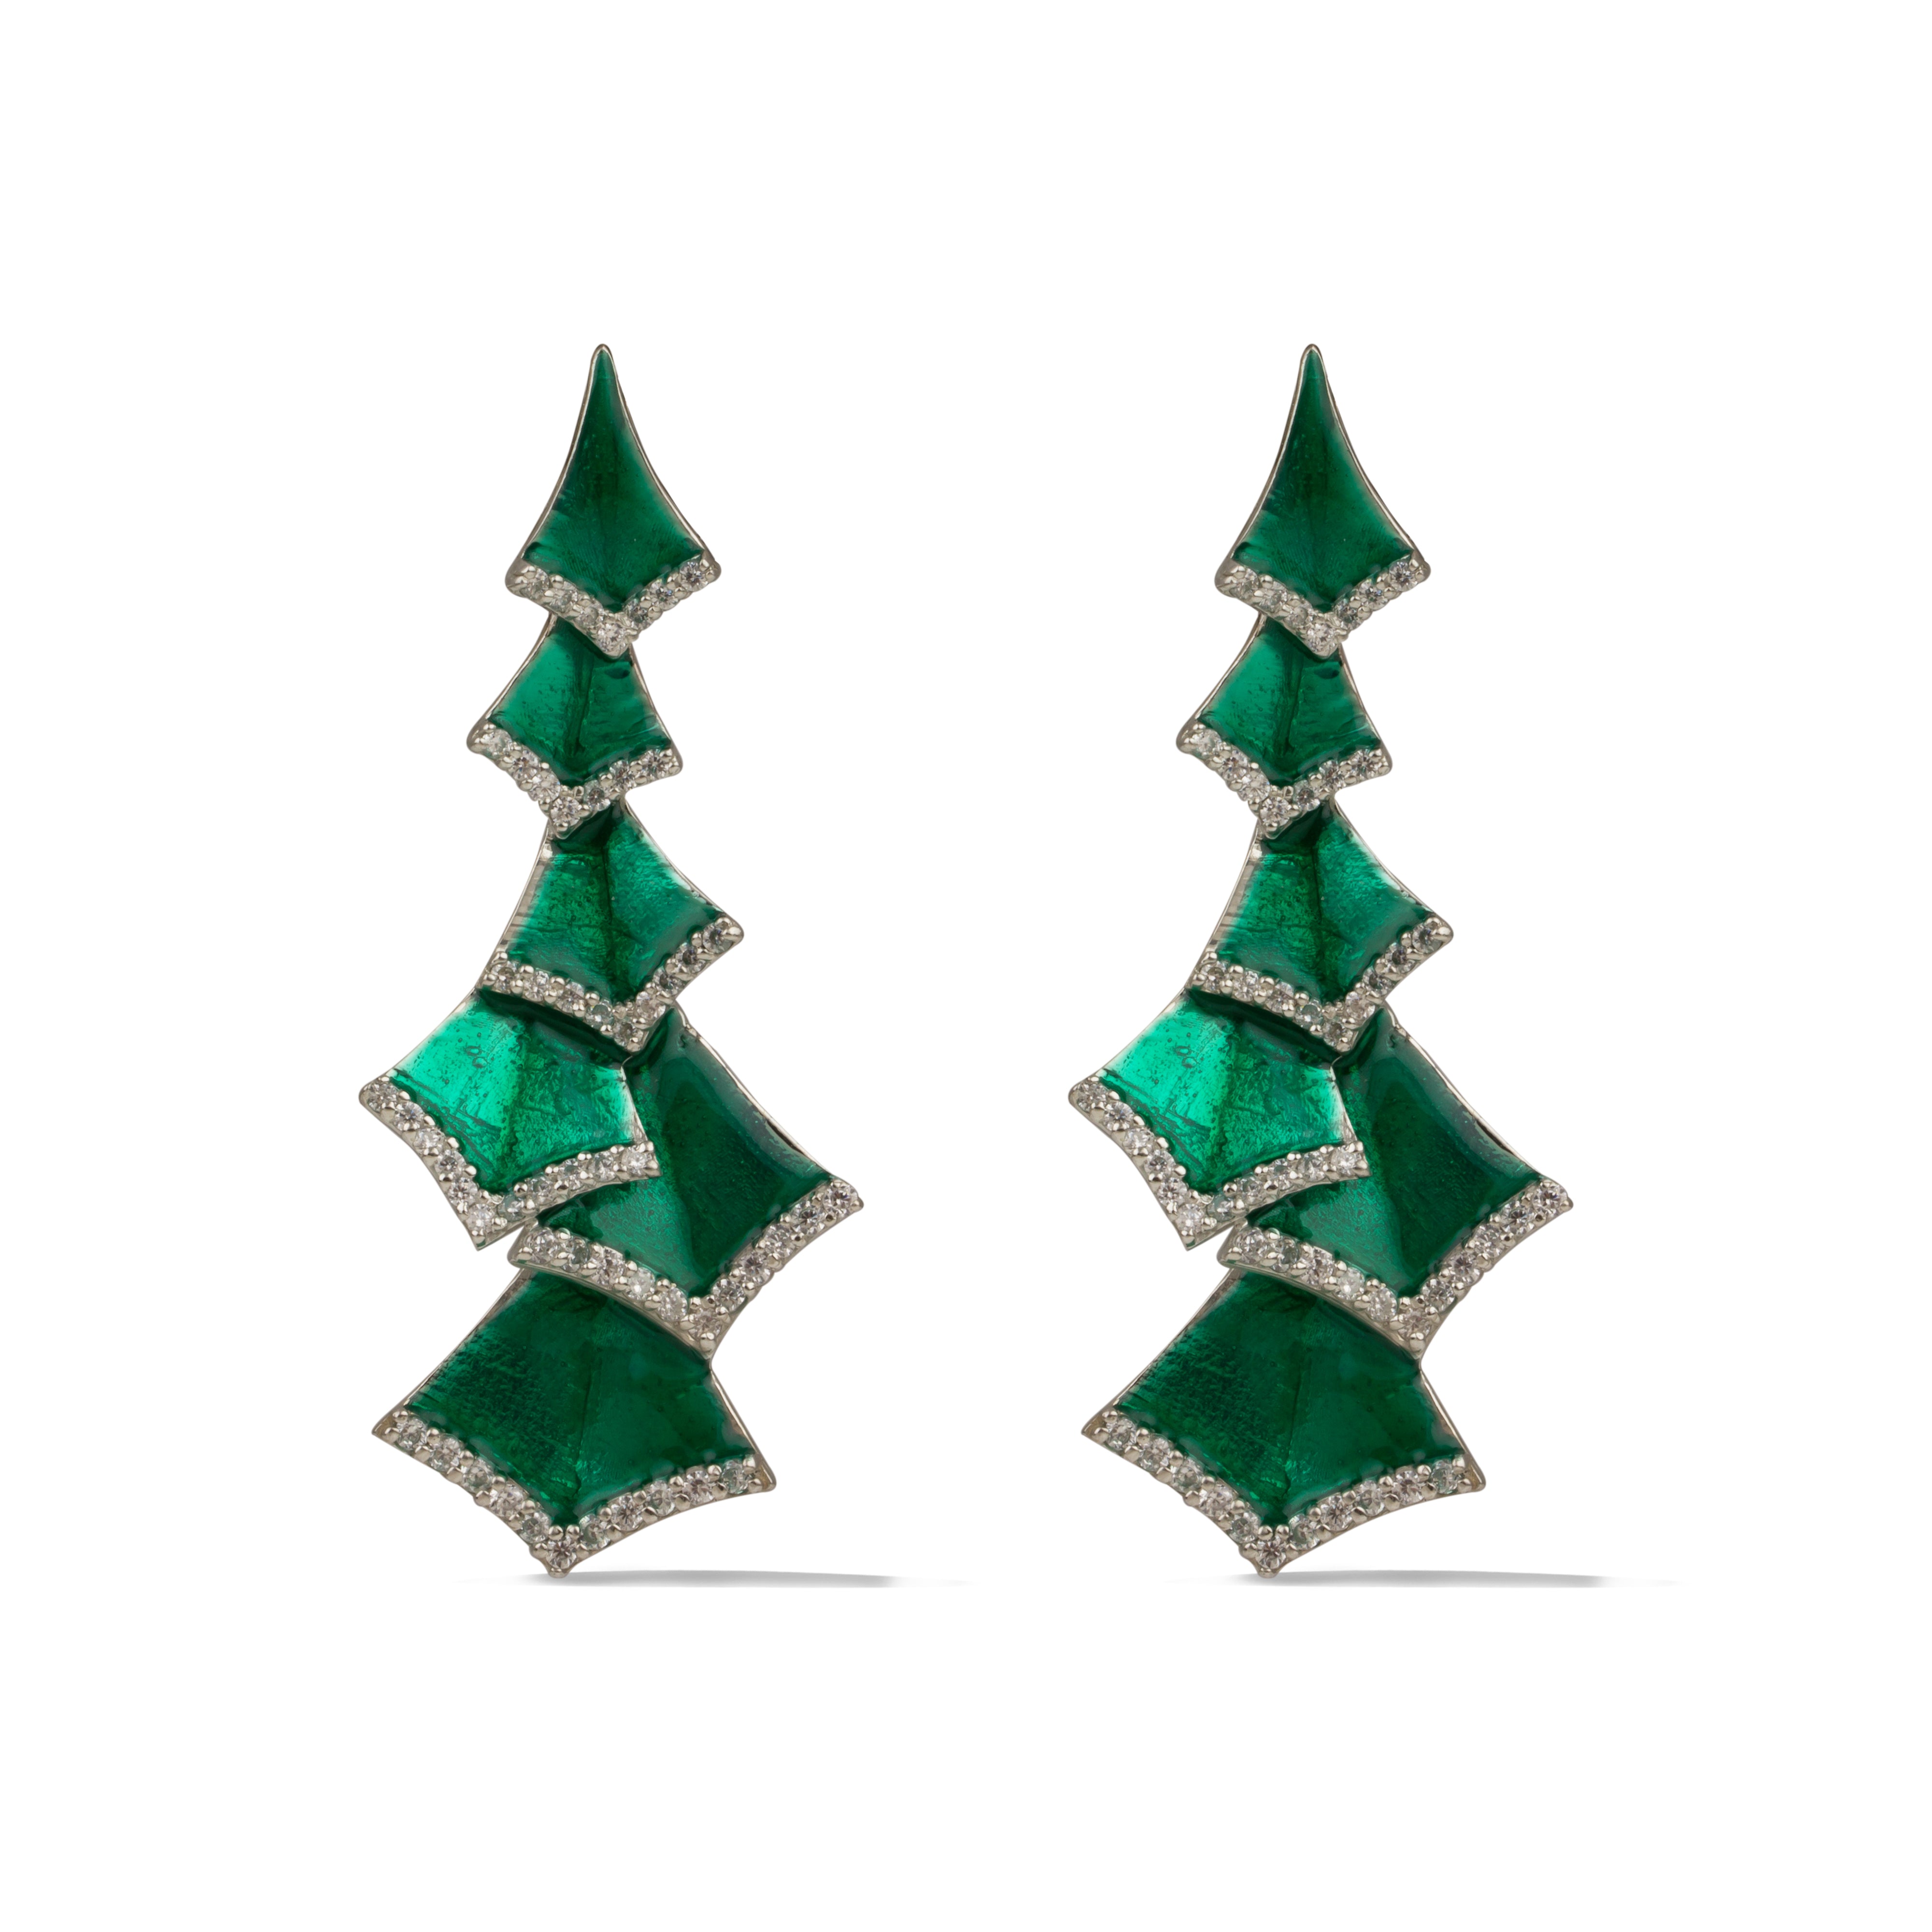 Dynasty-Gin Emerald earrings